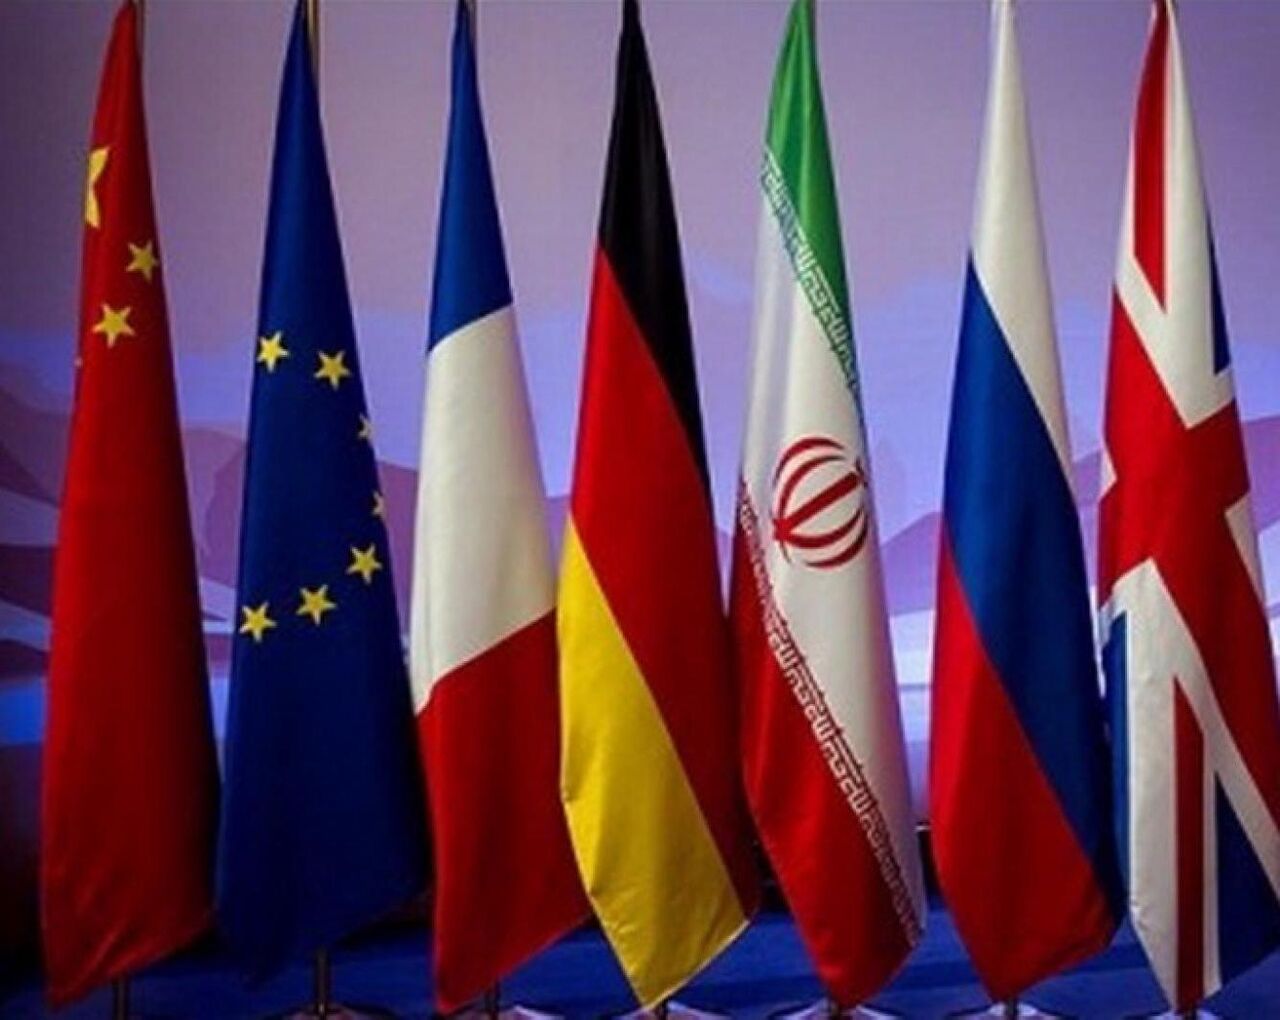 ایران در حال بررسی اطمینان آور بودن پیشنهاد اروپا در سه حوزه پادمان، تحریم و تضمین است